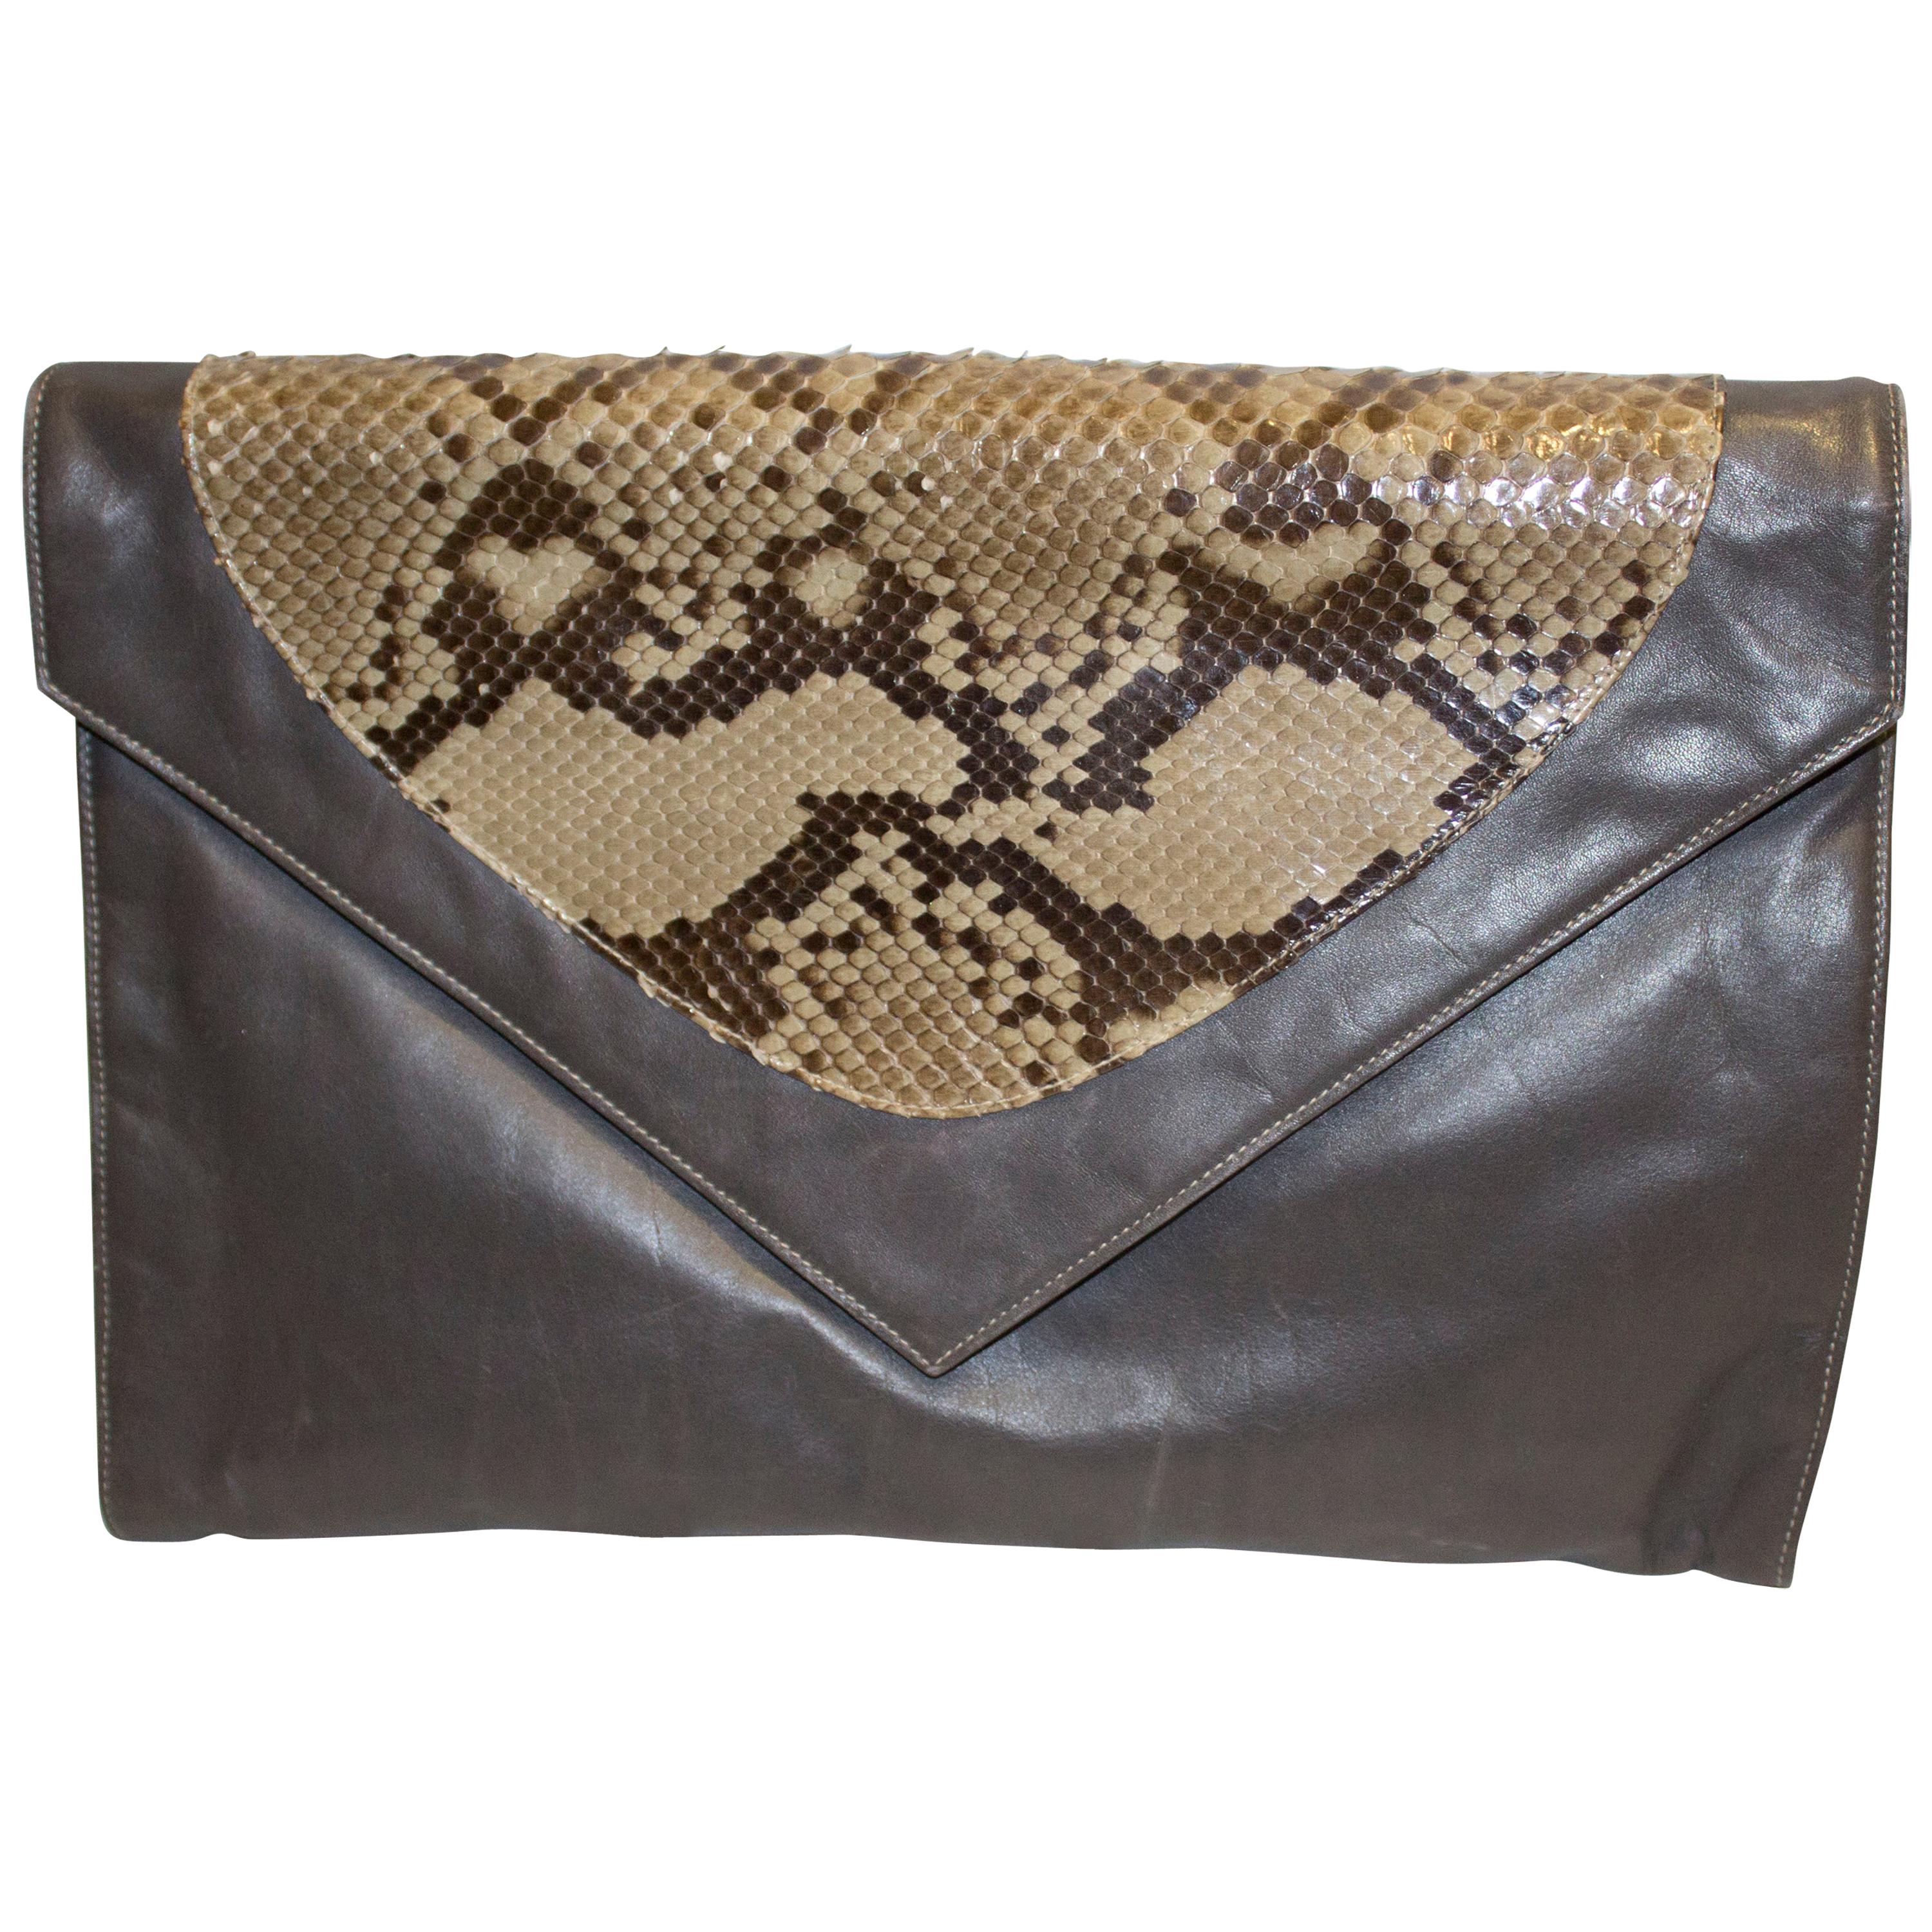 Vintage Aldrovandi Hand Made Leather and Snakeskin Bag - Clutch or Shoulder